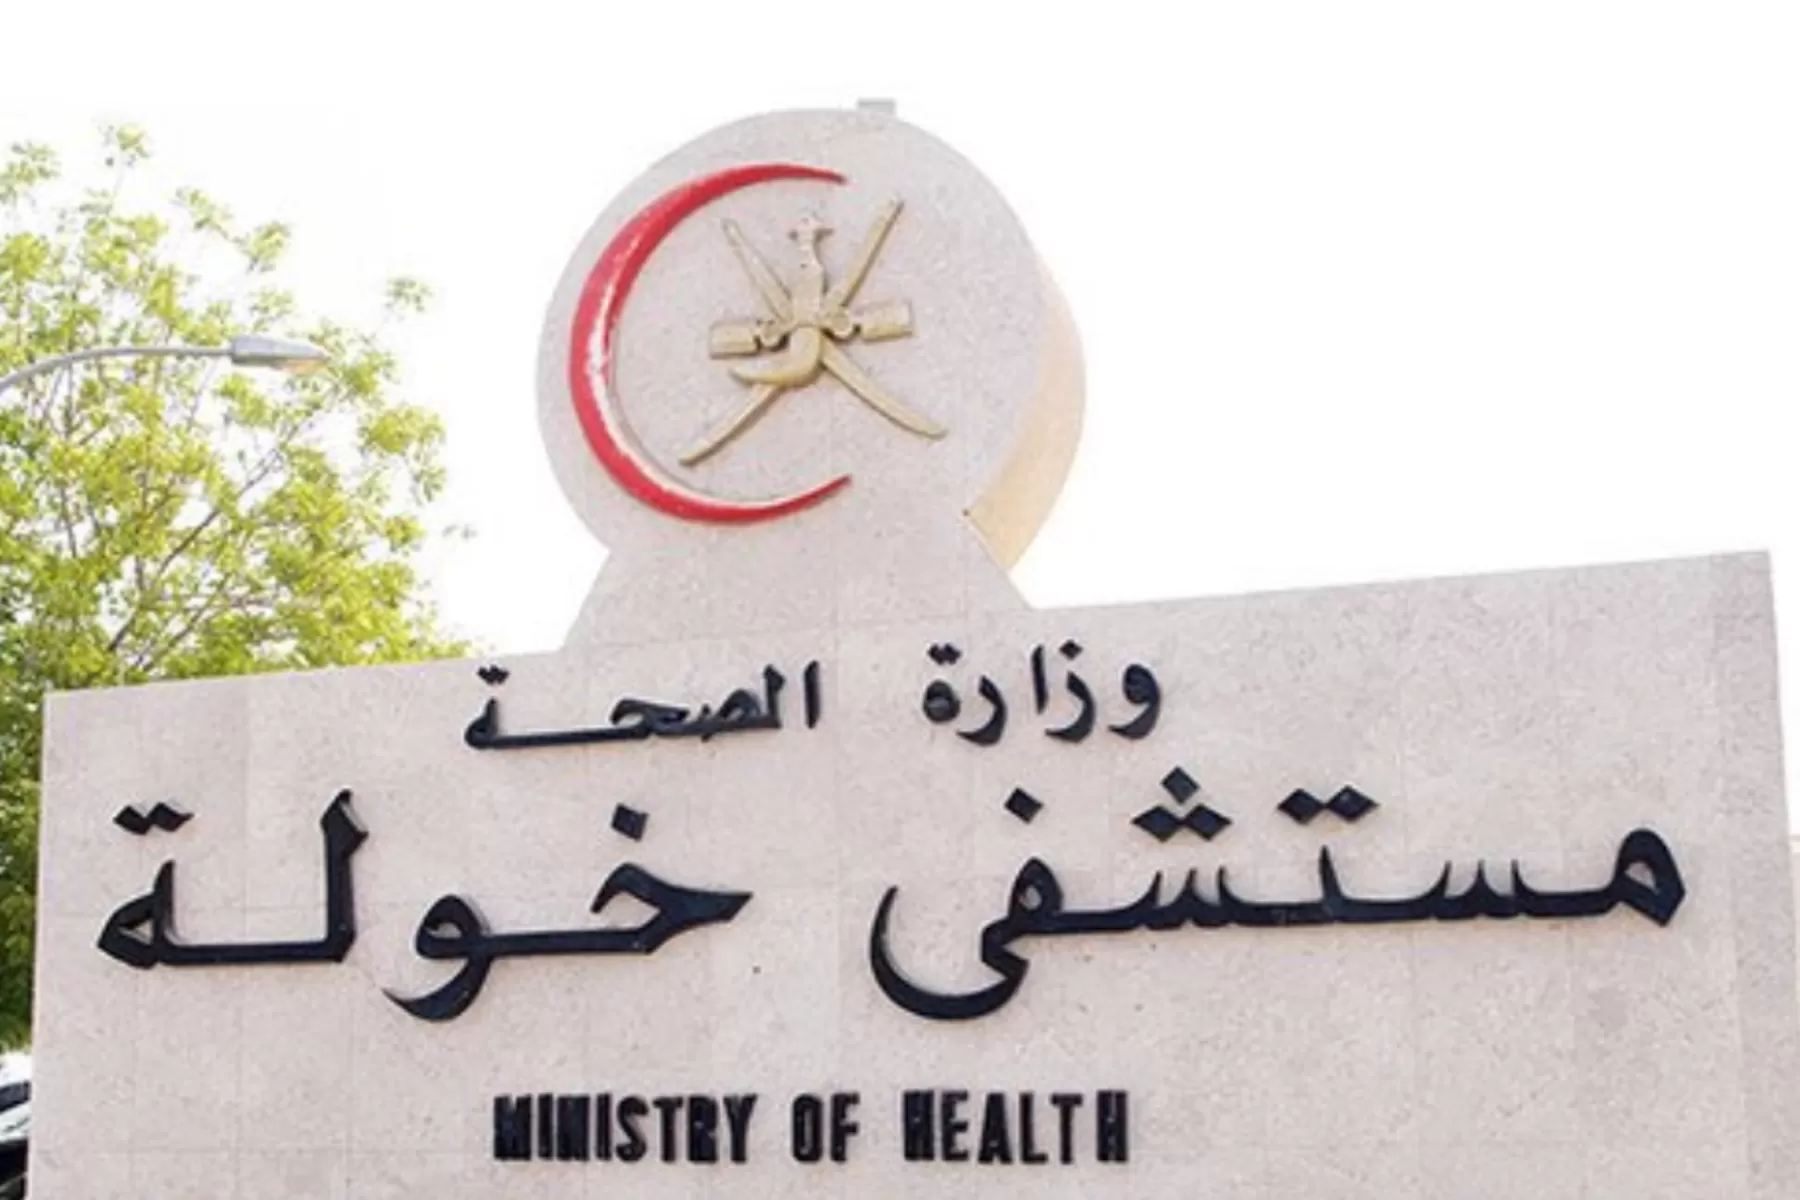 ضجت مواقع التوصل الاجتماعي في سلطنة عمان خلال الساعات الماضية بتداول مقطع فيديو صادم يوثق وجود فأر كبير في مستشفى خولة.